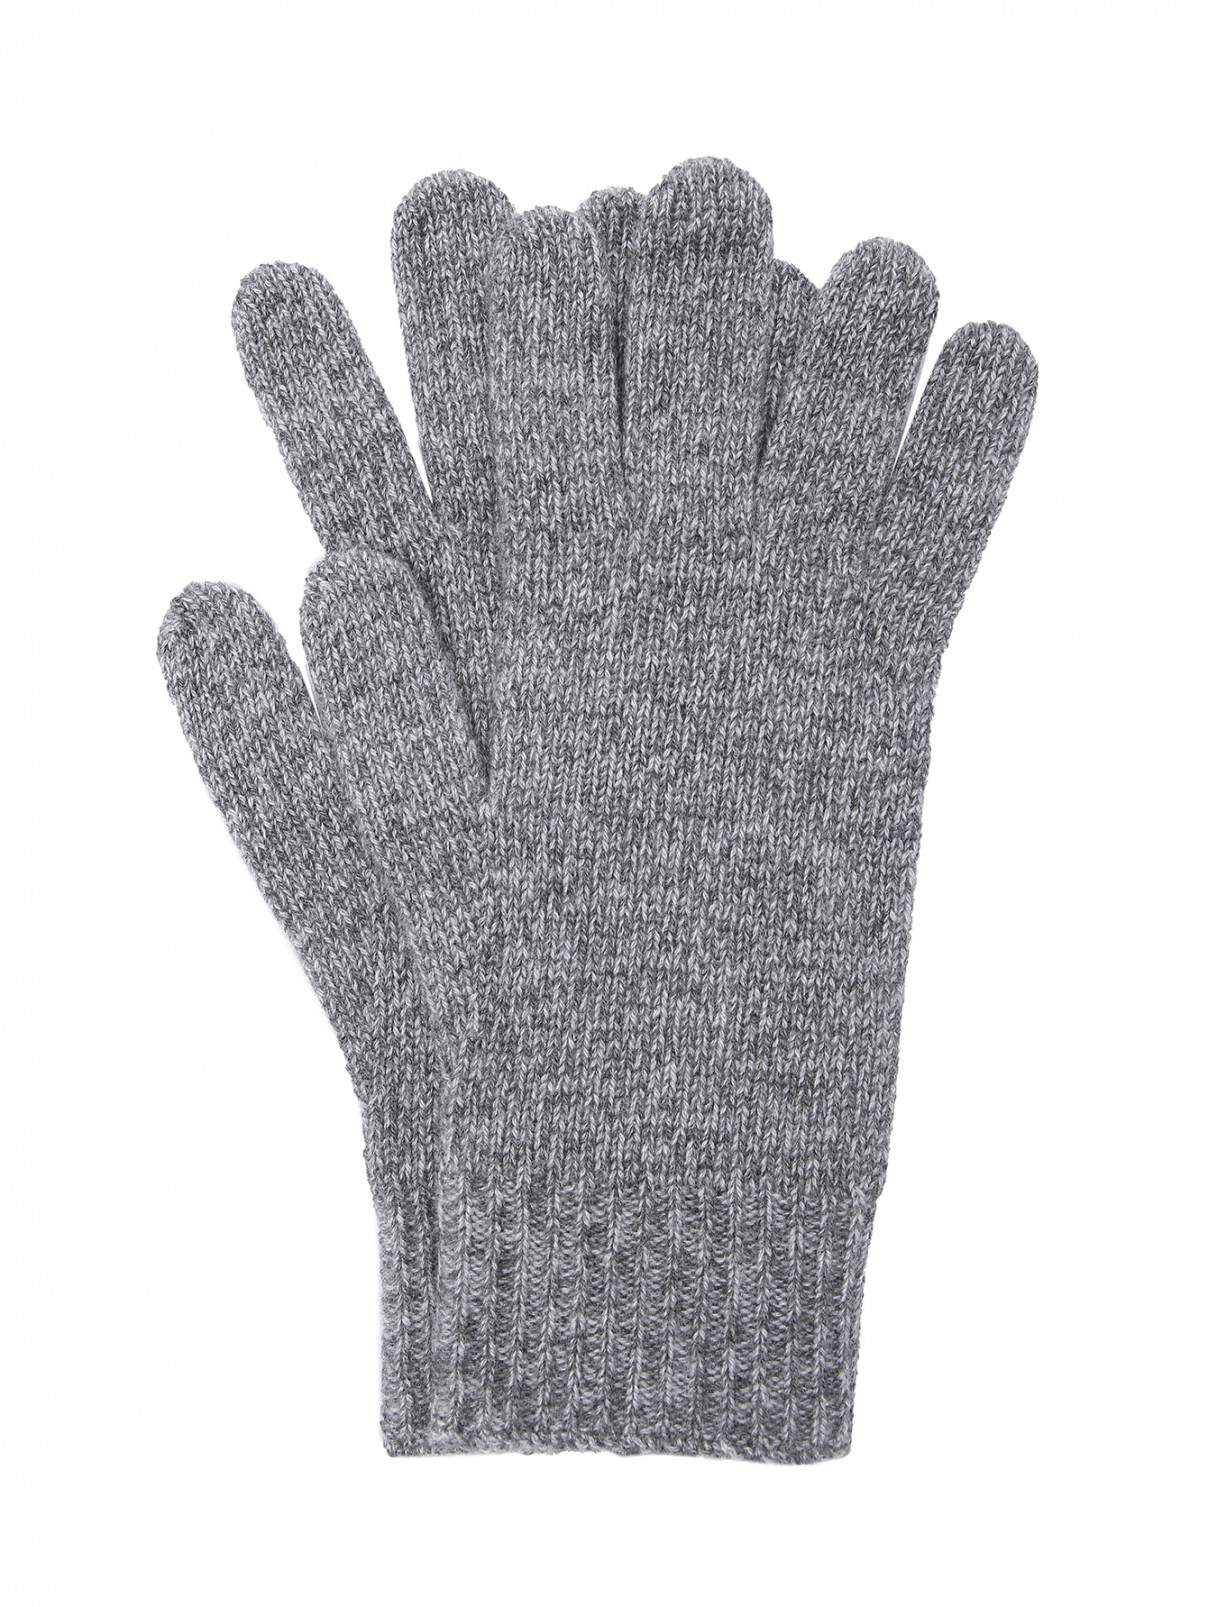 Однотонные перчатки из кашемира Weekend Max Mara  –  Общий вид  – Цвет:  Серый